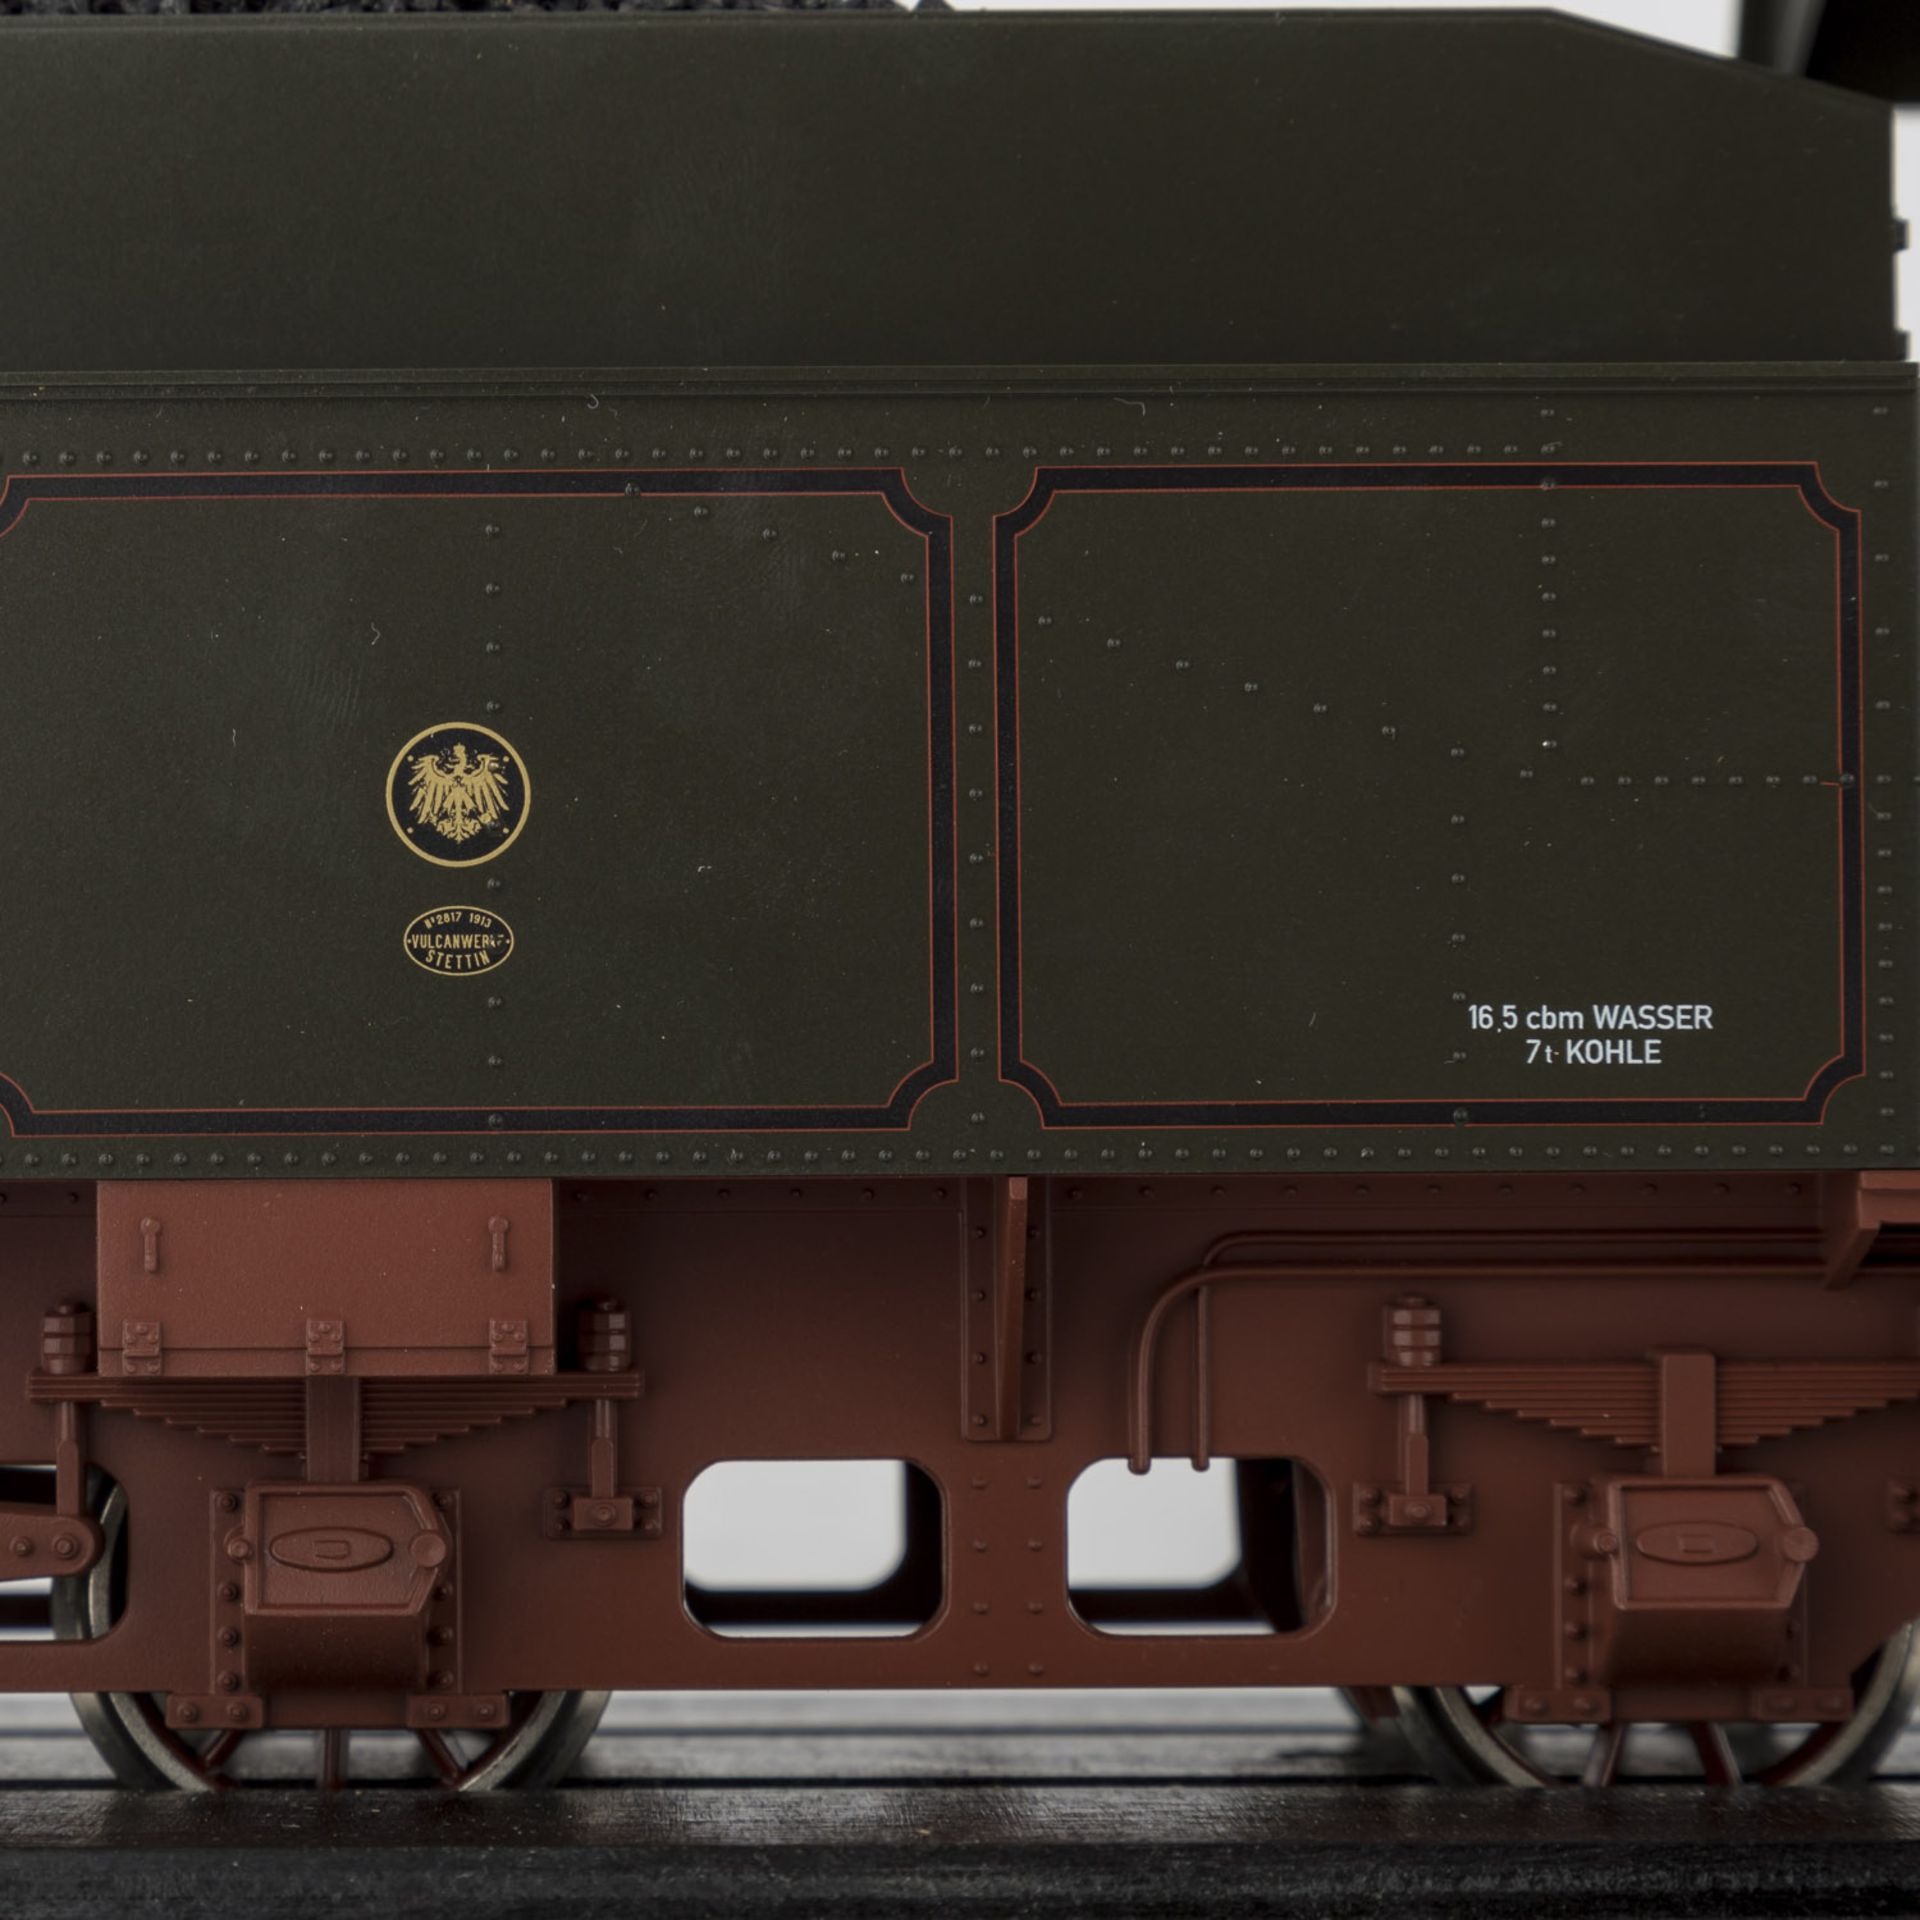 MÄRKLIN Lokomotive G8 der K.P.E.V mit Schlepptender, Spur 1,BN 4814 mit Kohletender auf - Bild 4 aus 4